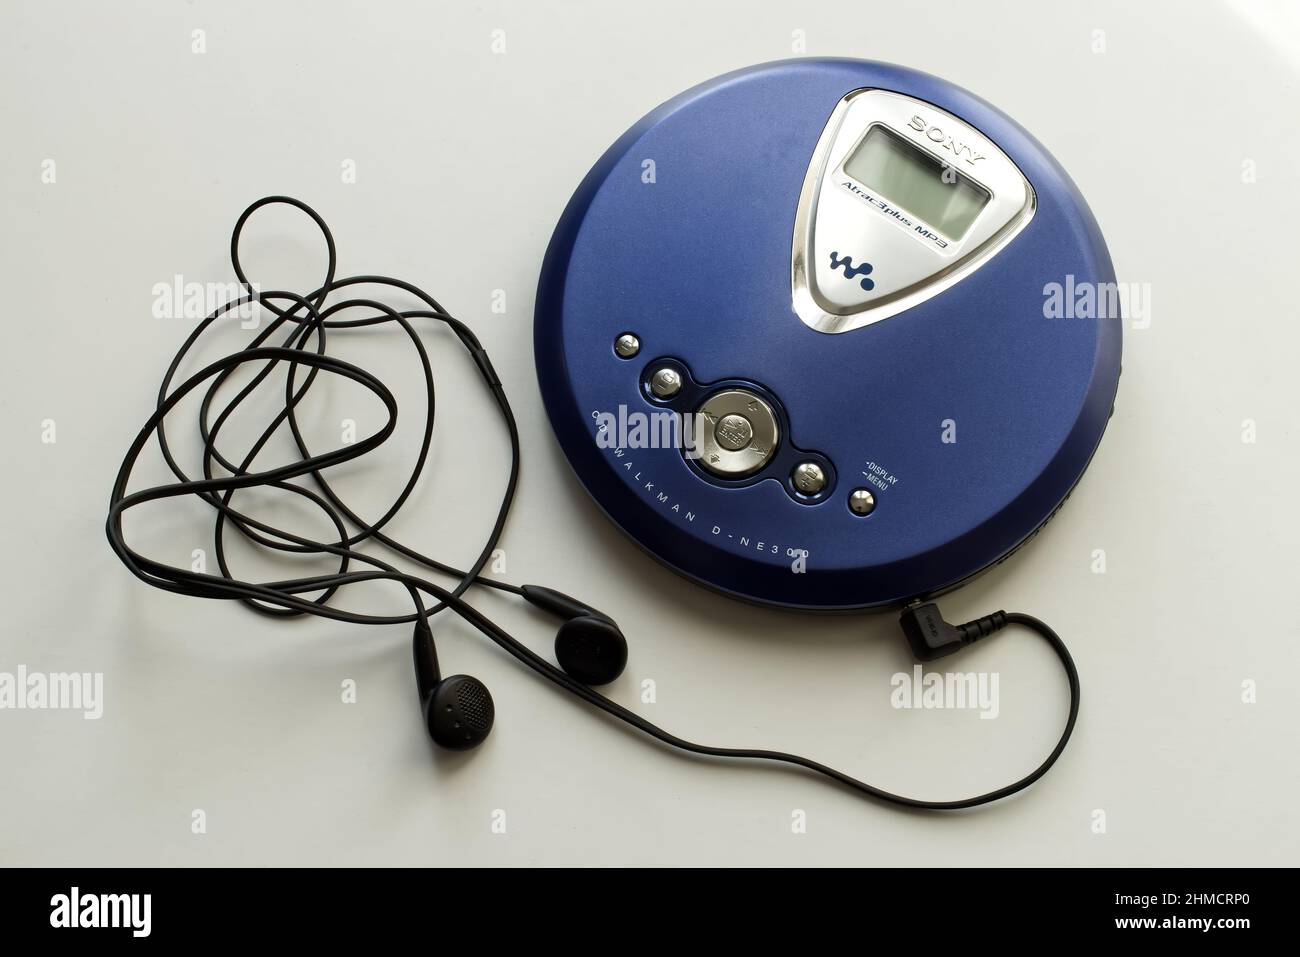 Walkman cd sony immagini e fotografie stock ad alta risoluzione - Alamy